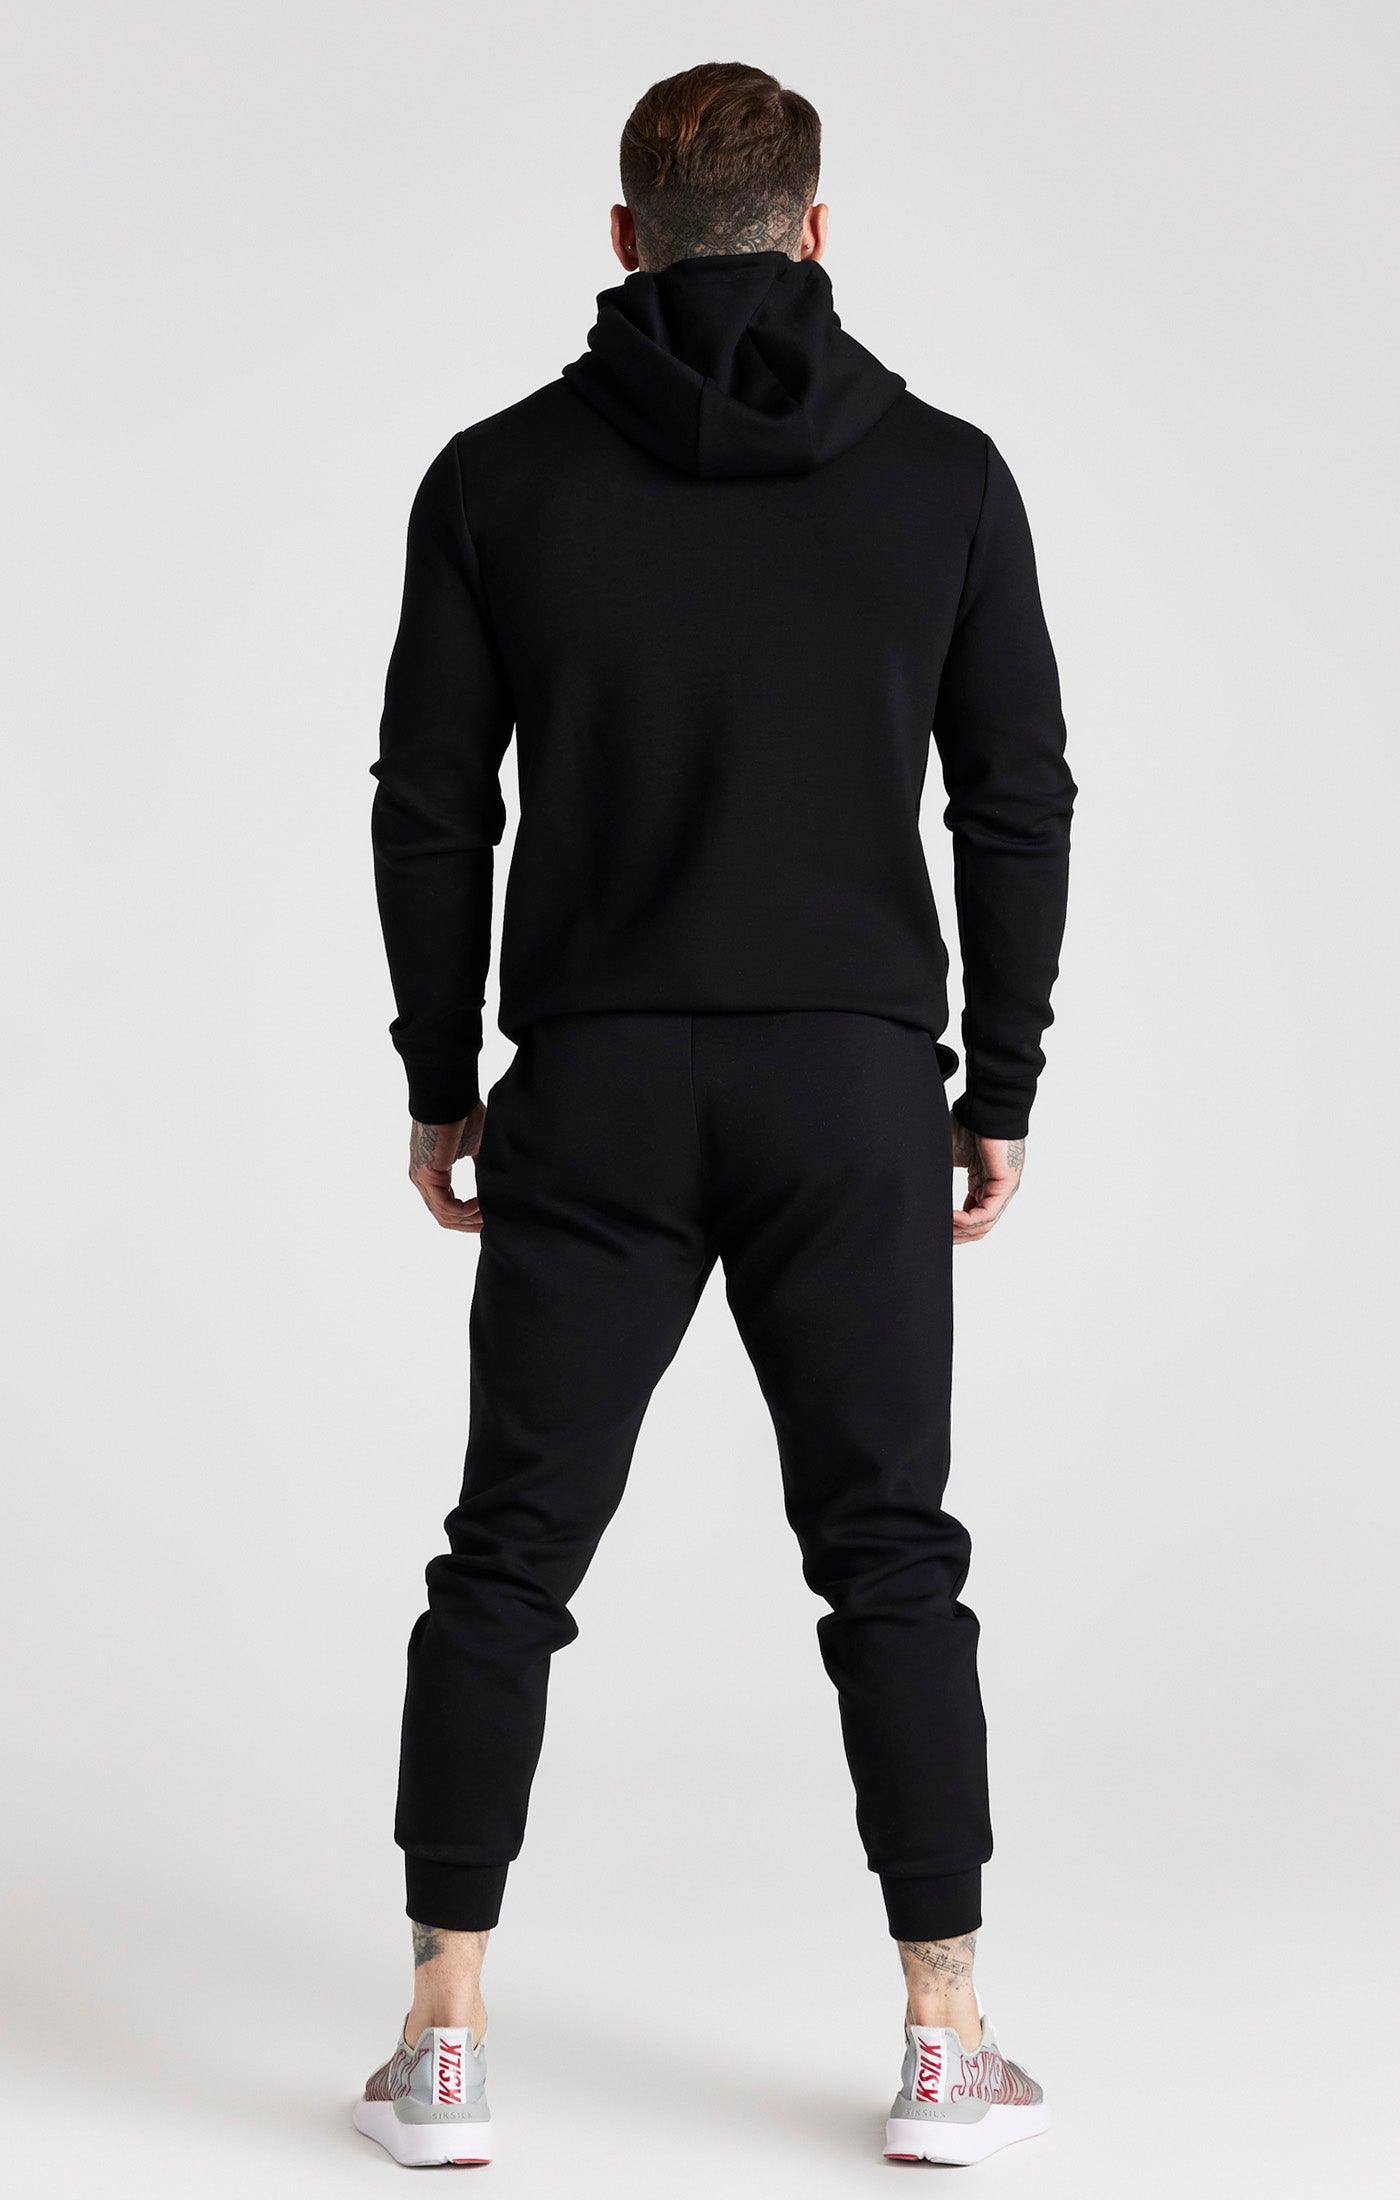 Schwarzes Trainingsanzug Set mit Reißverschluss und Hose (1)